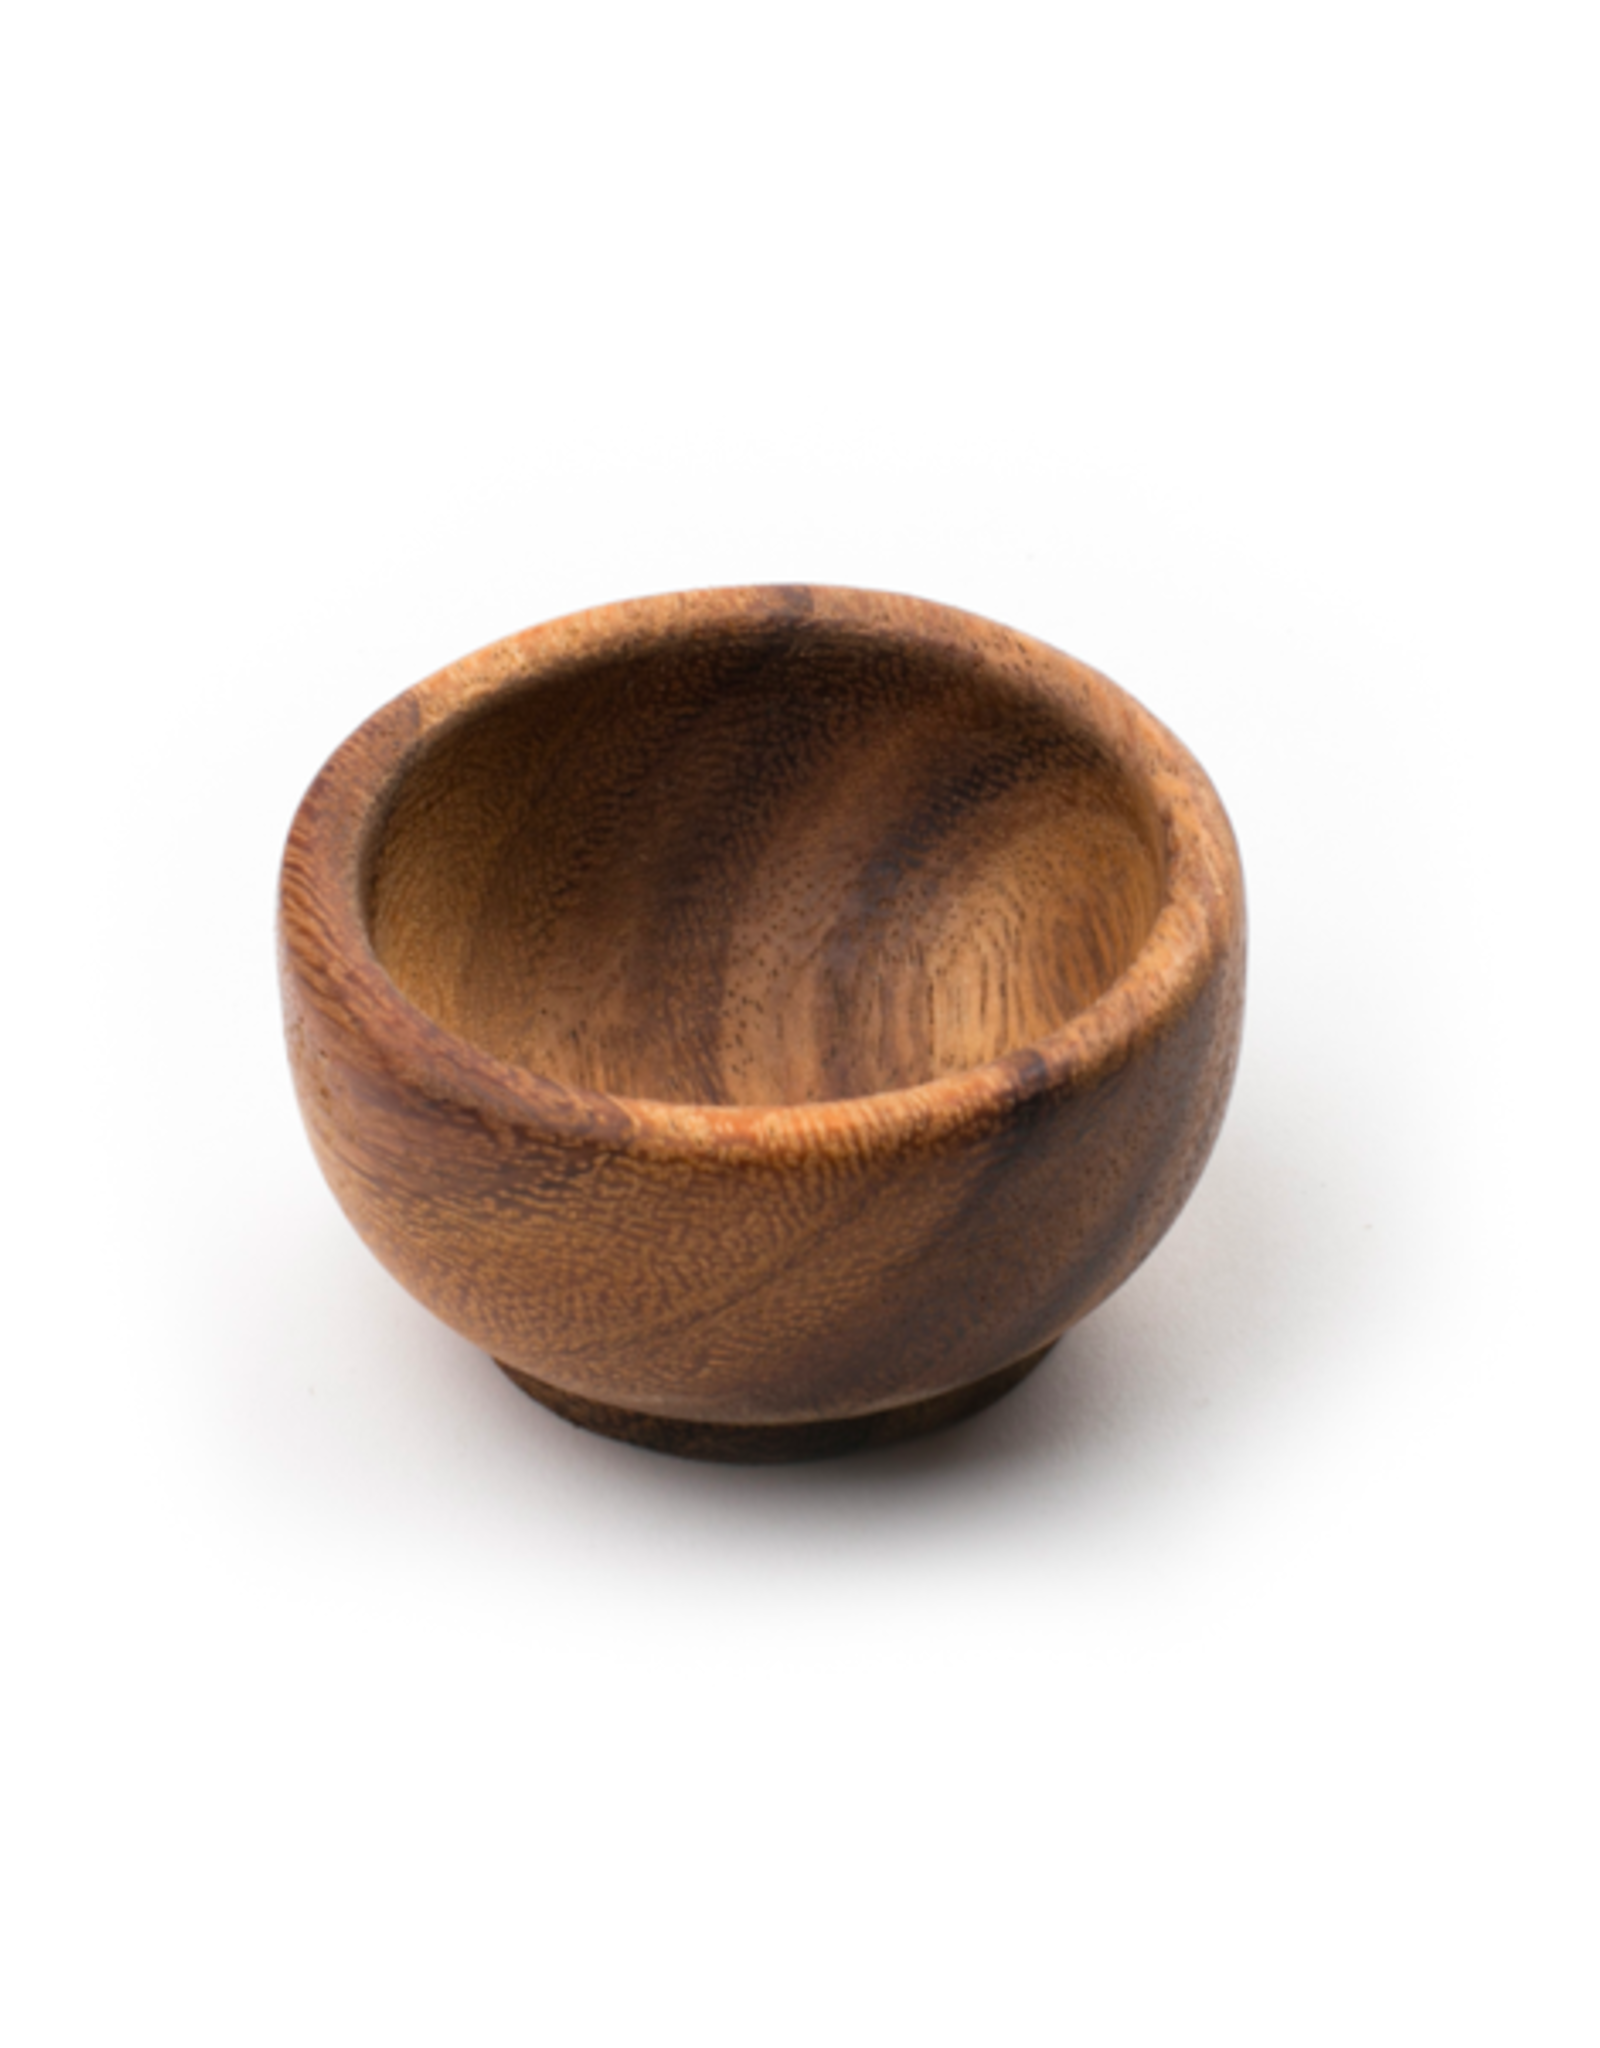 FUN - Bowl / Acacia Wood, 2.5"